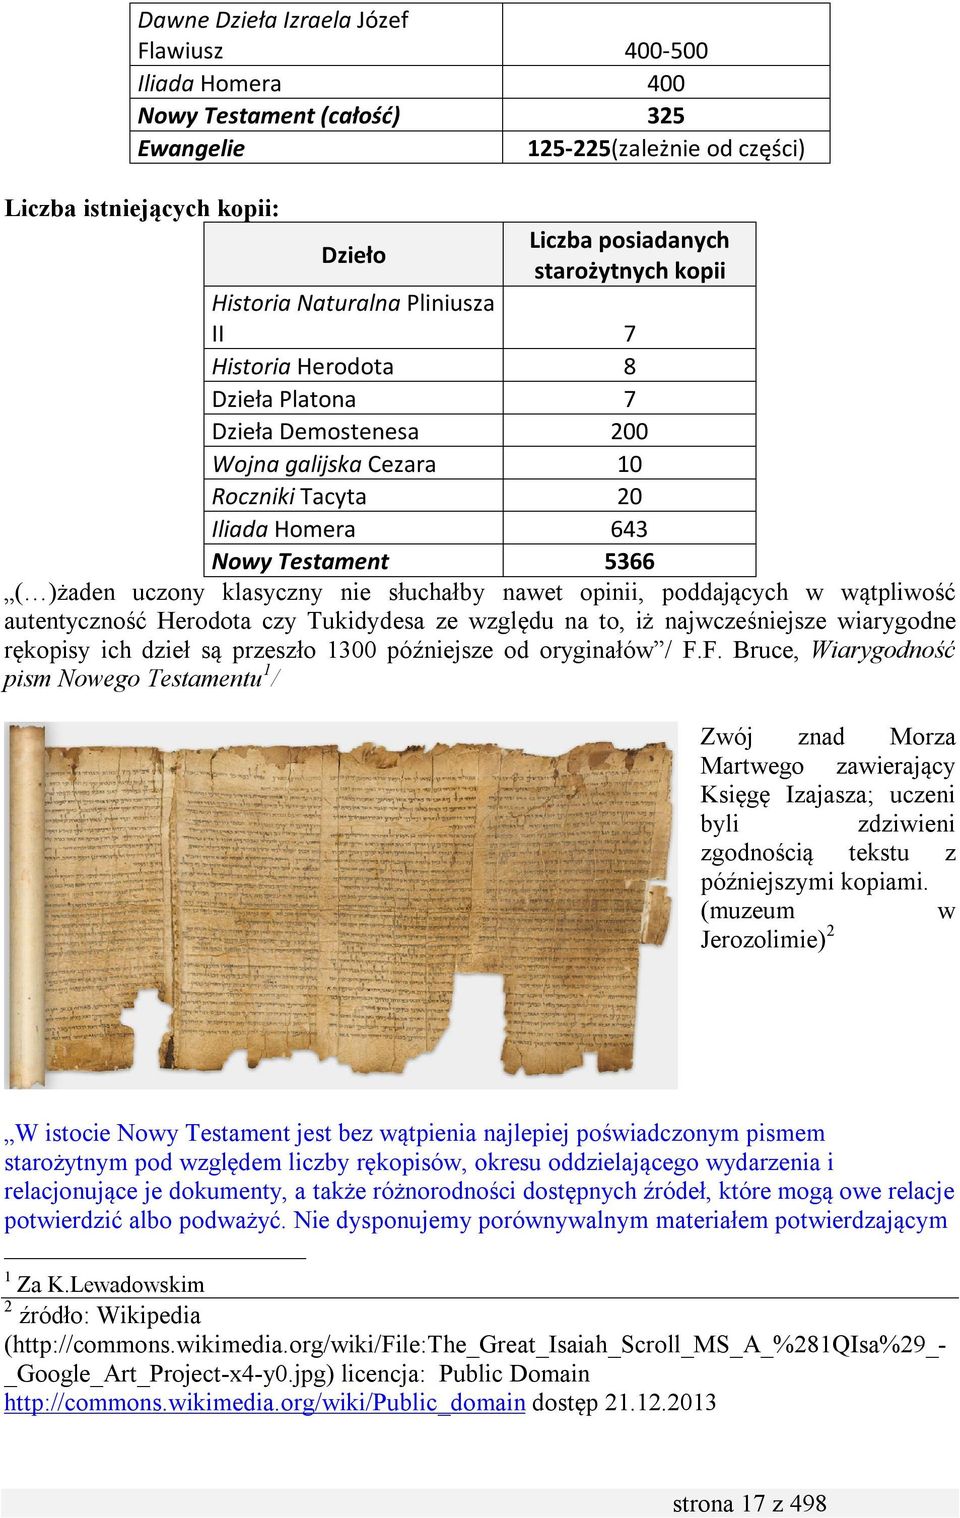 klasyczny nie słuchałby nawet opinii, poddających w wątpliwość autentyczność Herodota czy Tukidydesa ze względu na to, iż najwcześniejsze wiarygodne rękopisy ich dzieł są przeszło 1300 późniejsze od